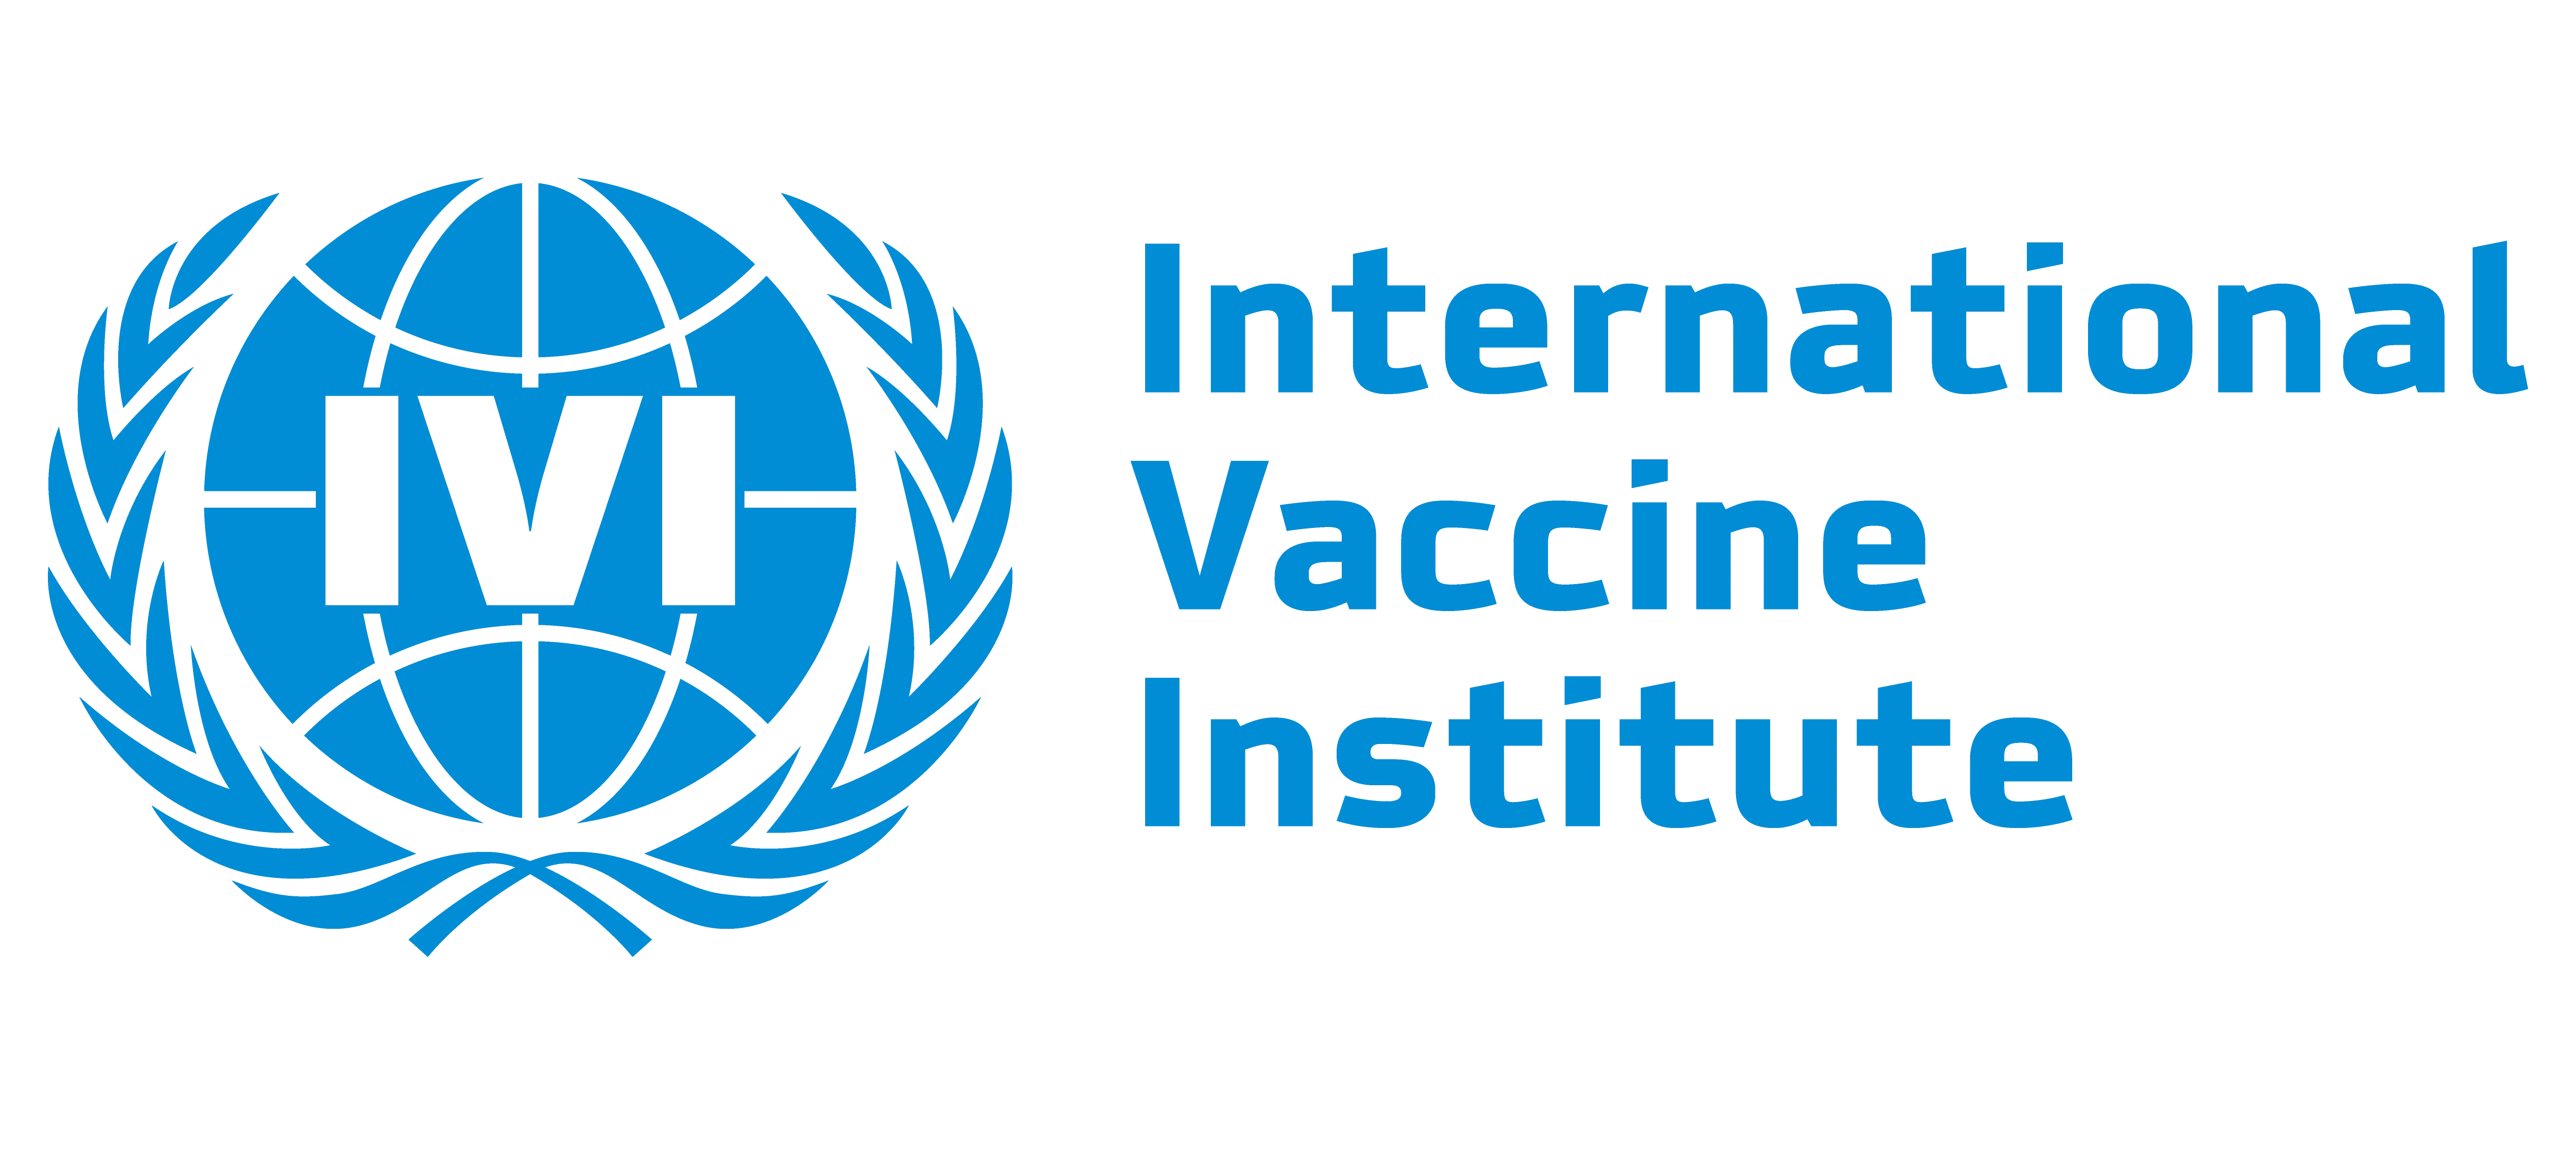 International Vaccine Institute